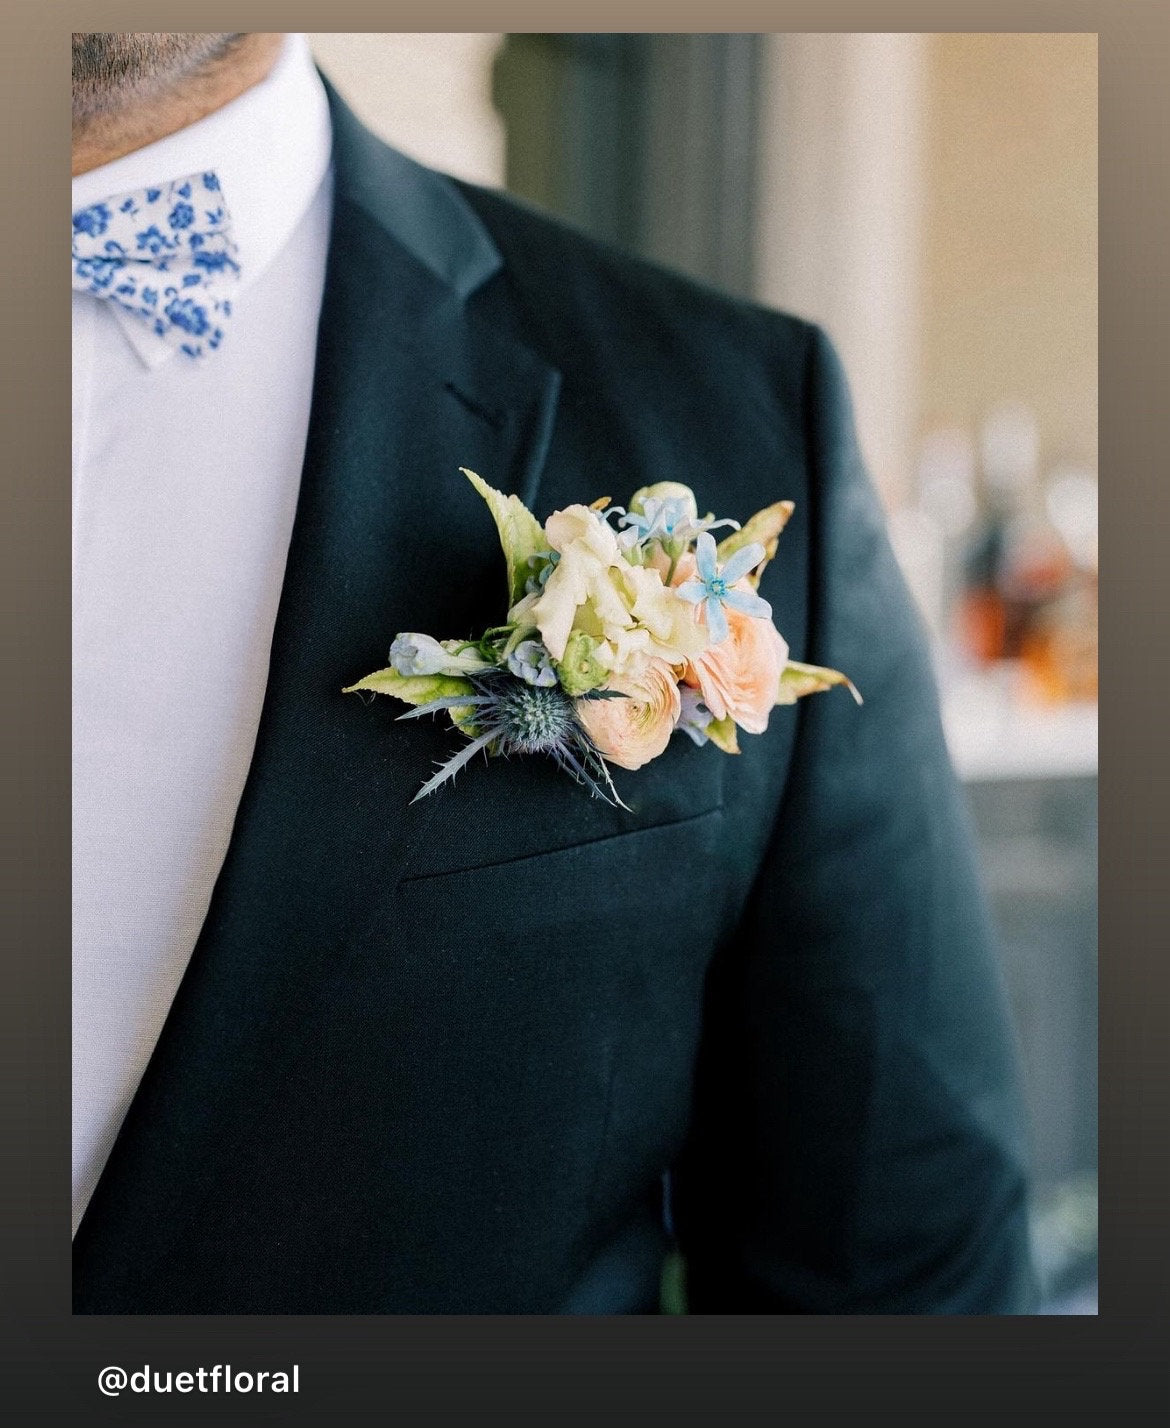 Floral Blue Necktie for Dusty Blue Wedding, Mens Floral Ties for Wedding Groomsmen Ties